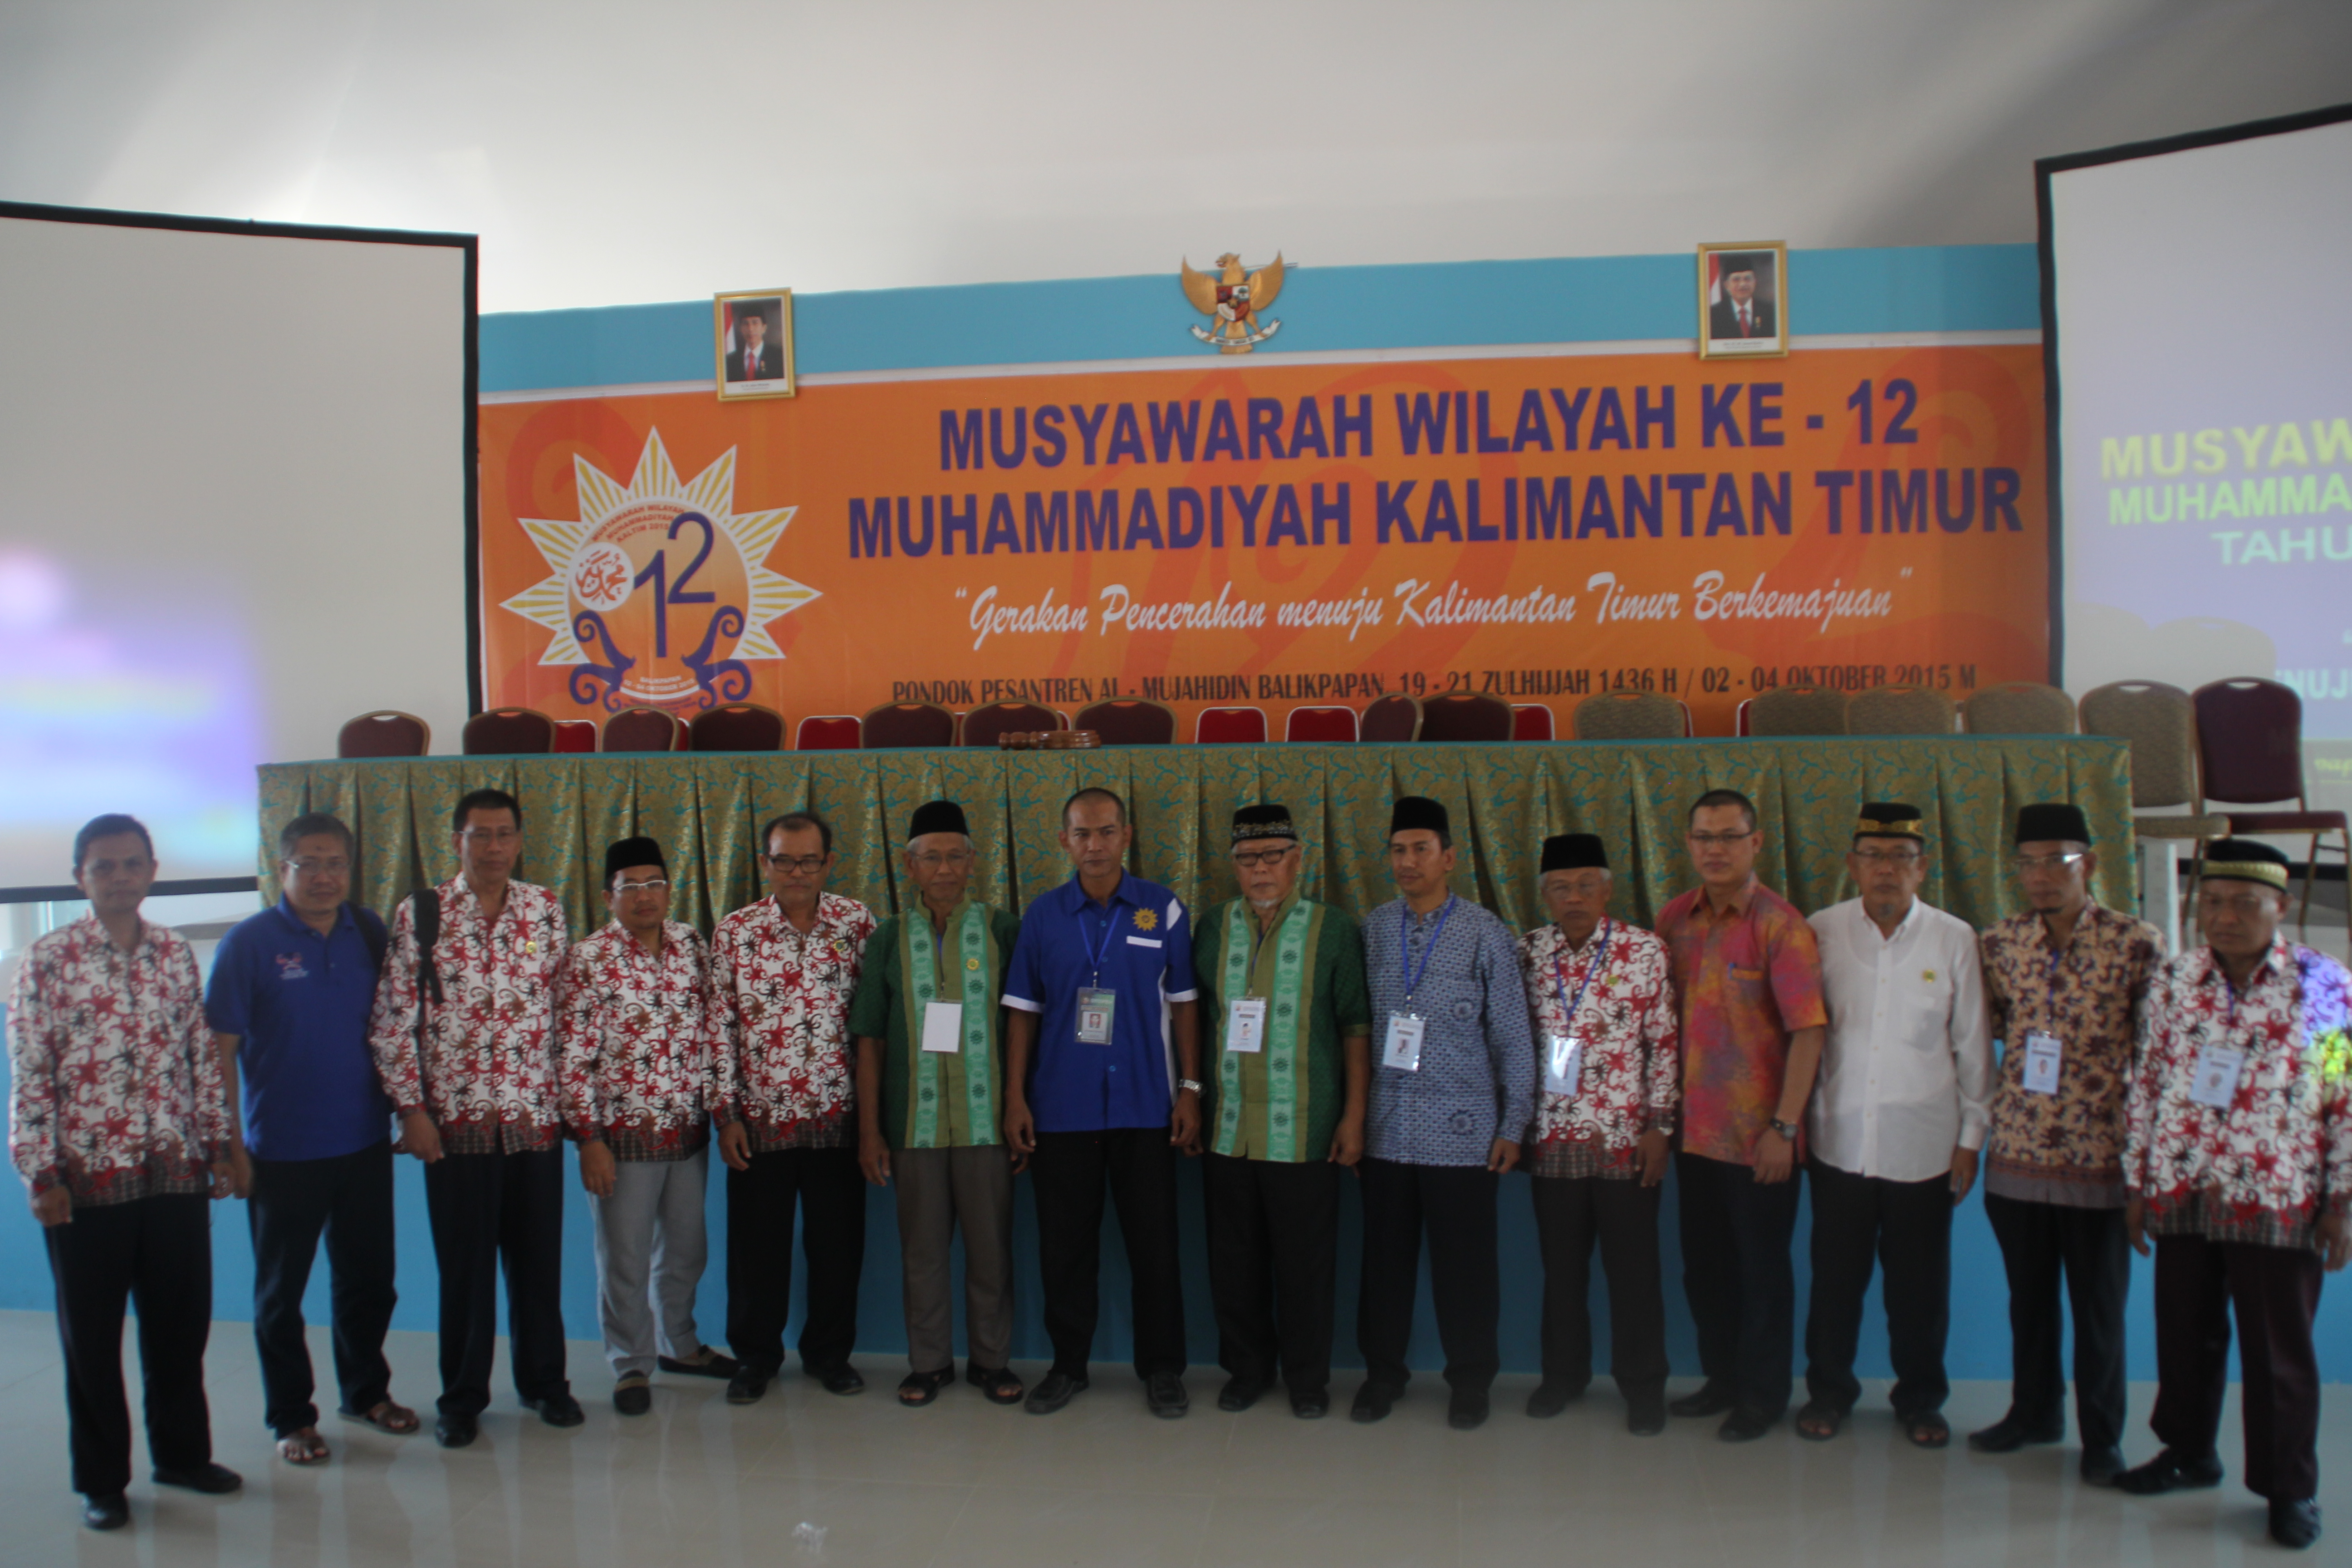 Lembaga Penelitian dan Pengembangan PW Muhammadiyah Kalimantan Timur